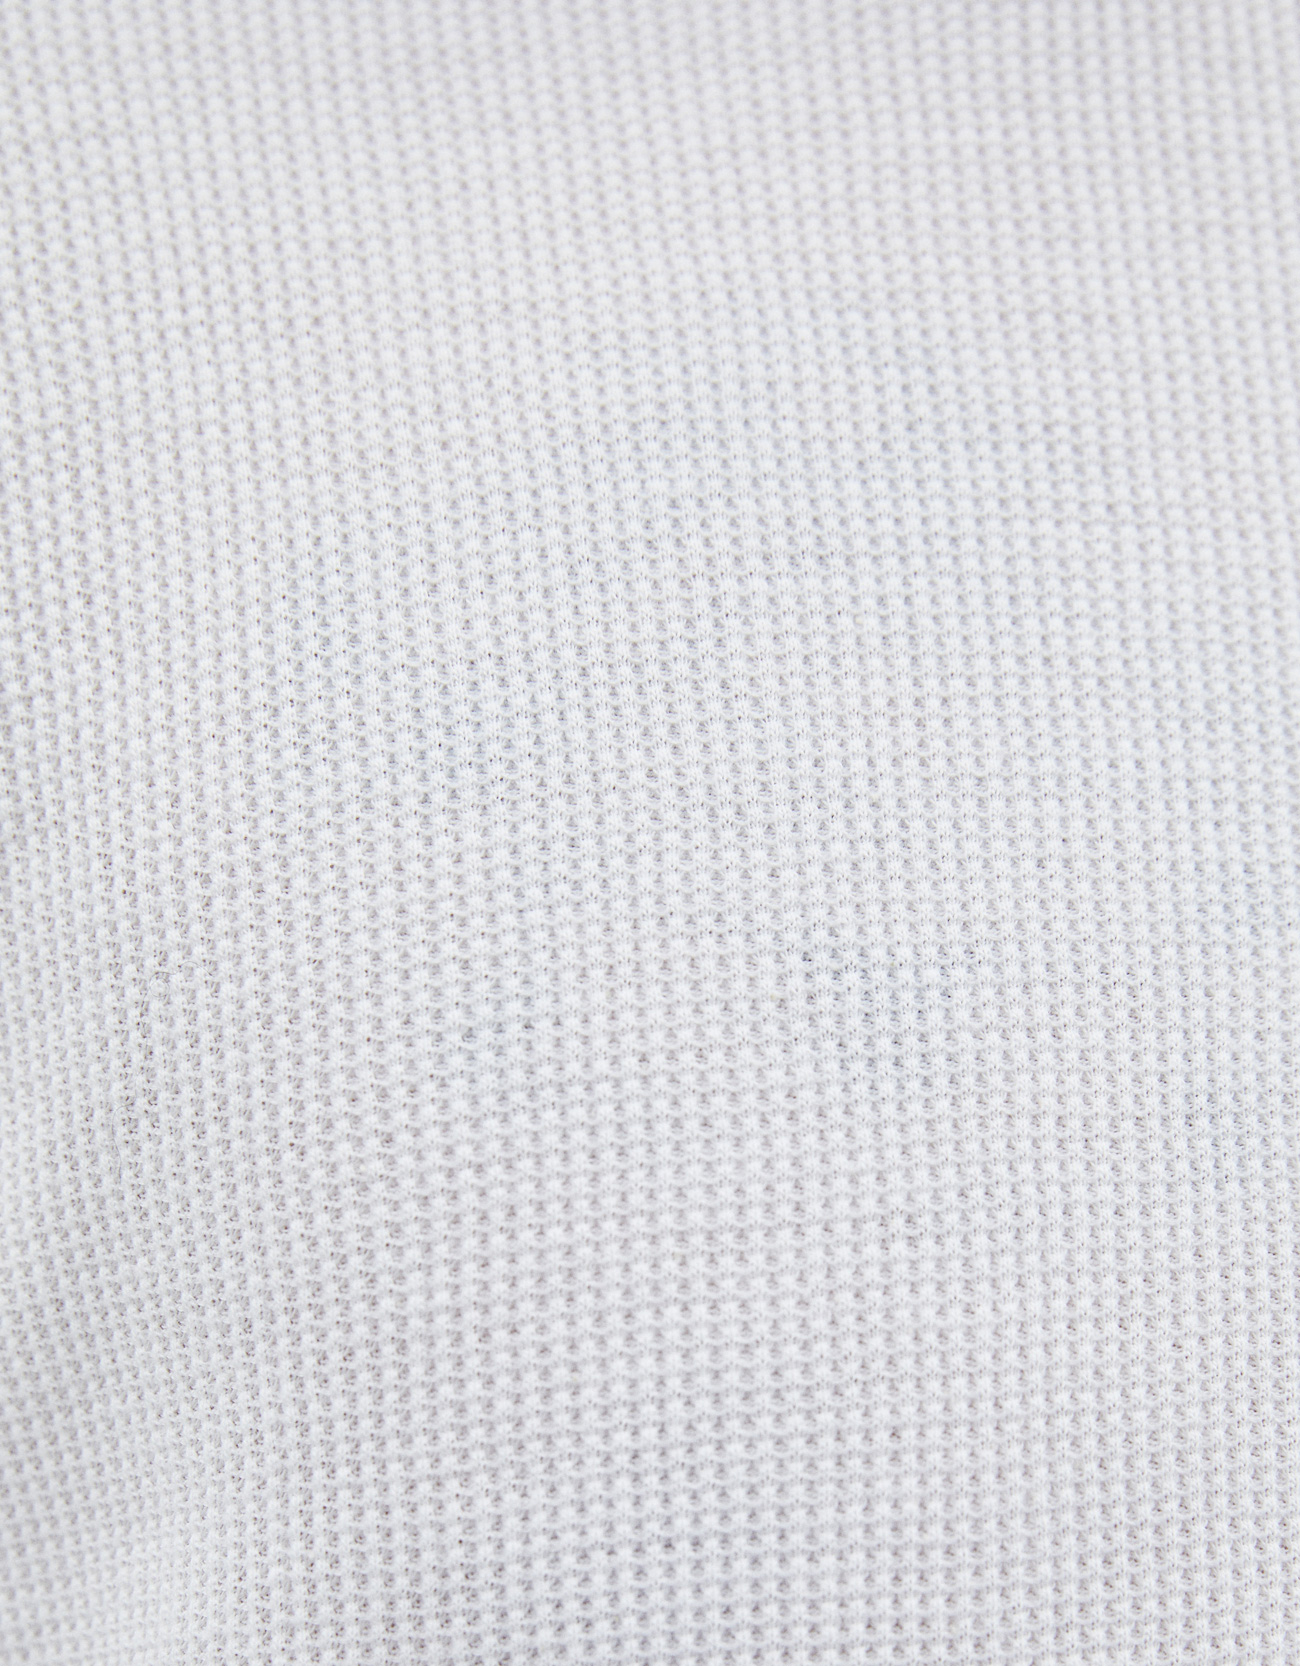 Shirt Textures - roblox clothing textures